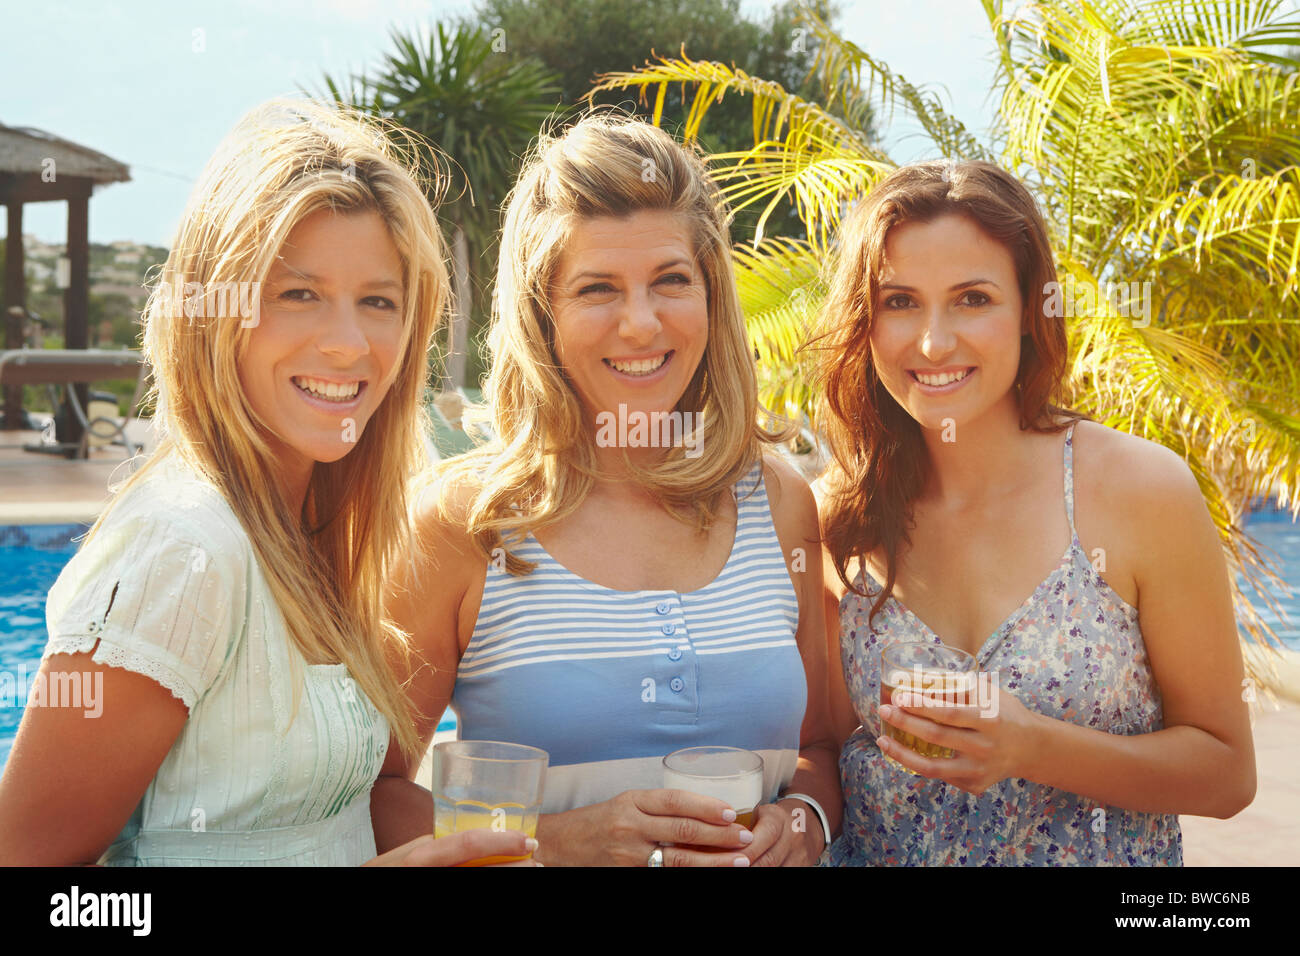 Portrait de trois femmes smiling by pool Banque D'Images